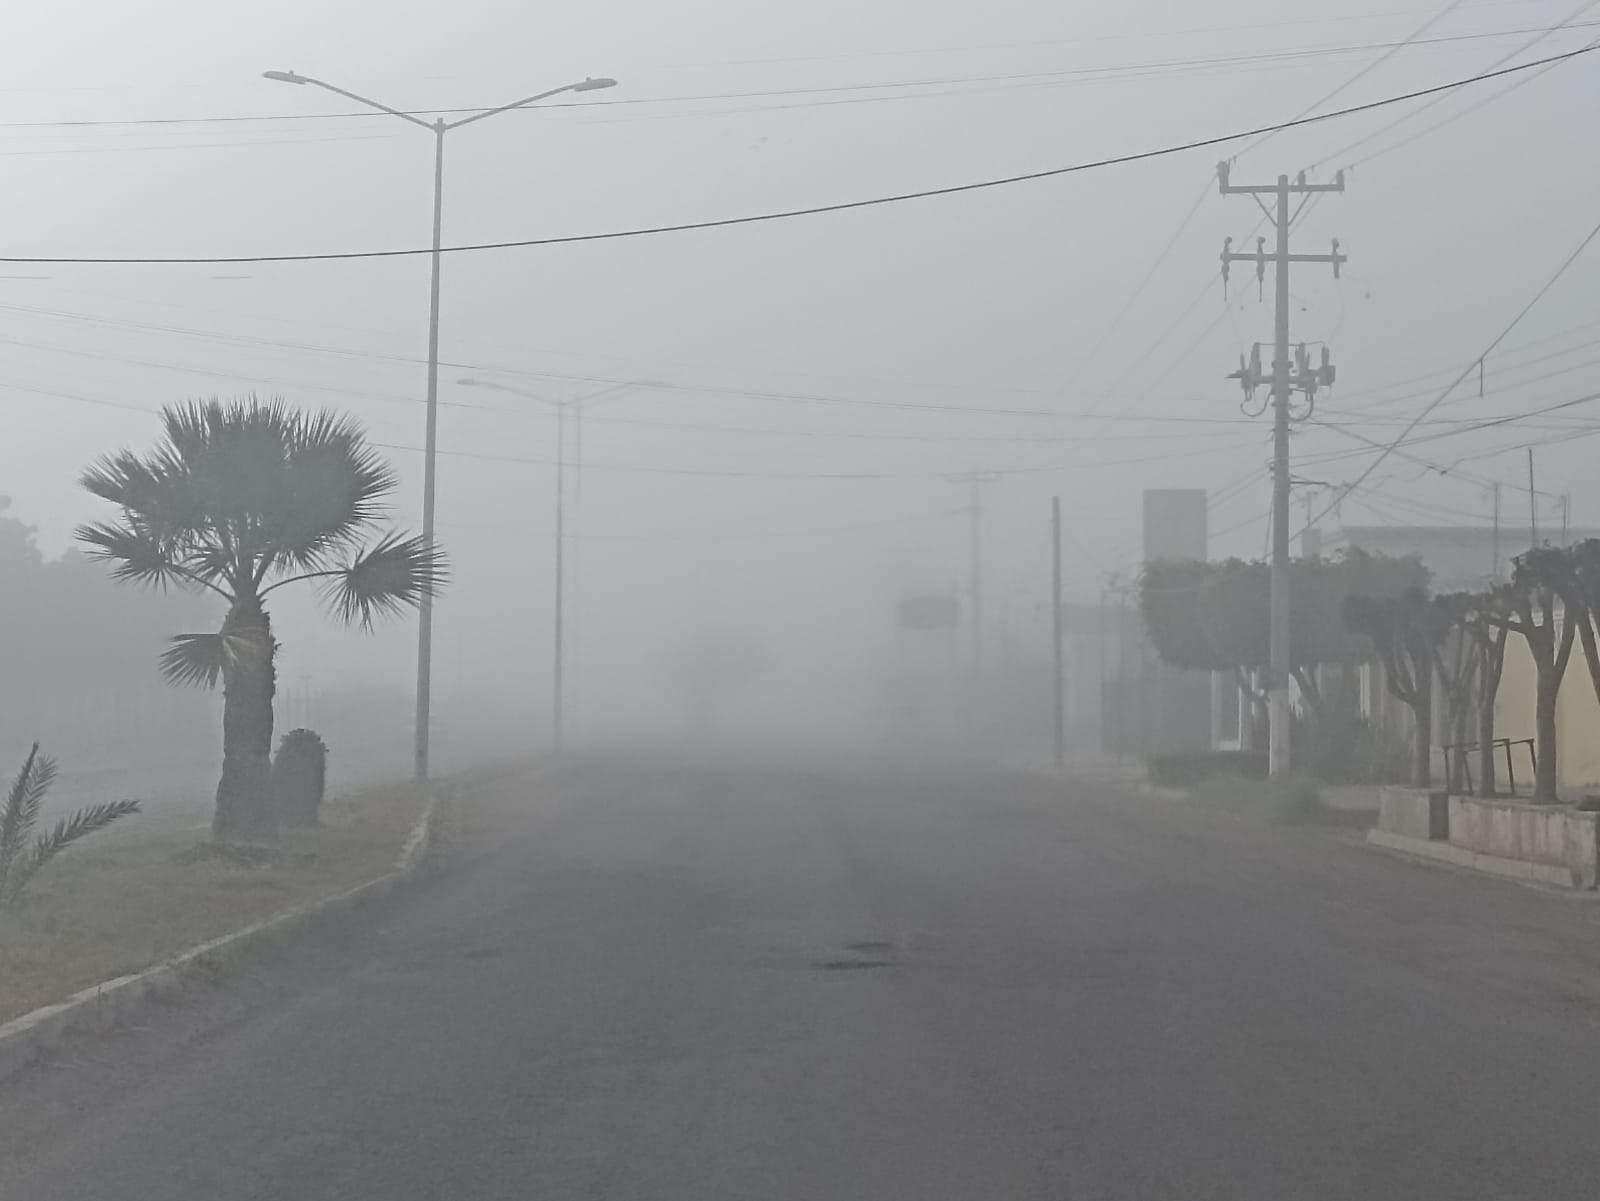 Sorprende capa de neblina a navojoenses esta mañana